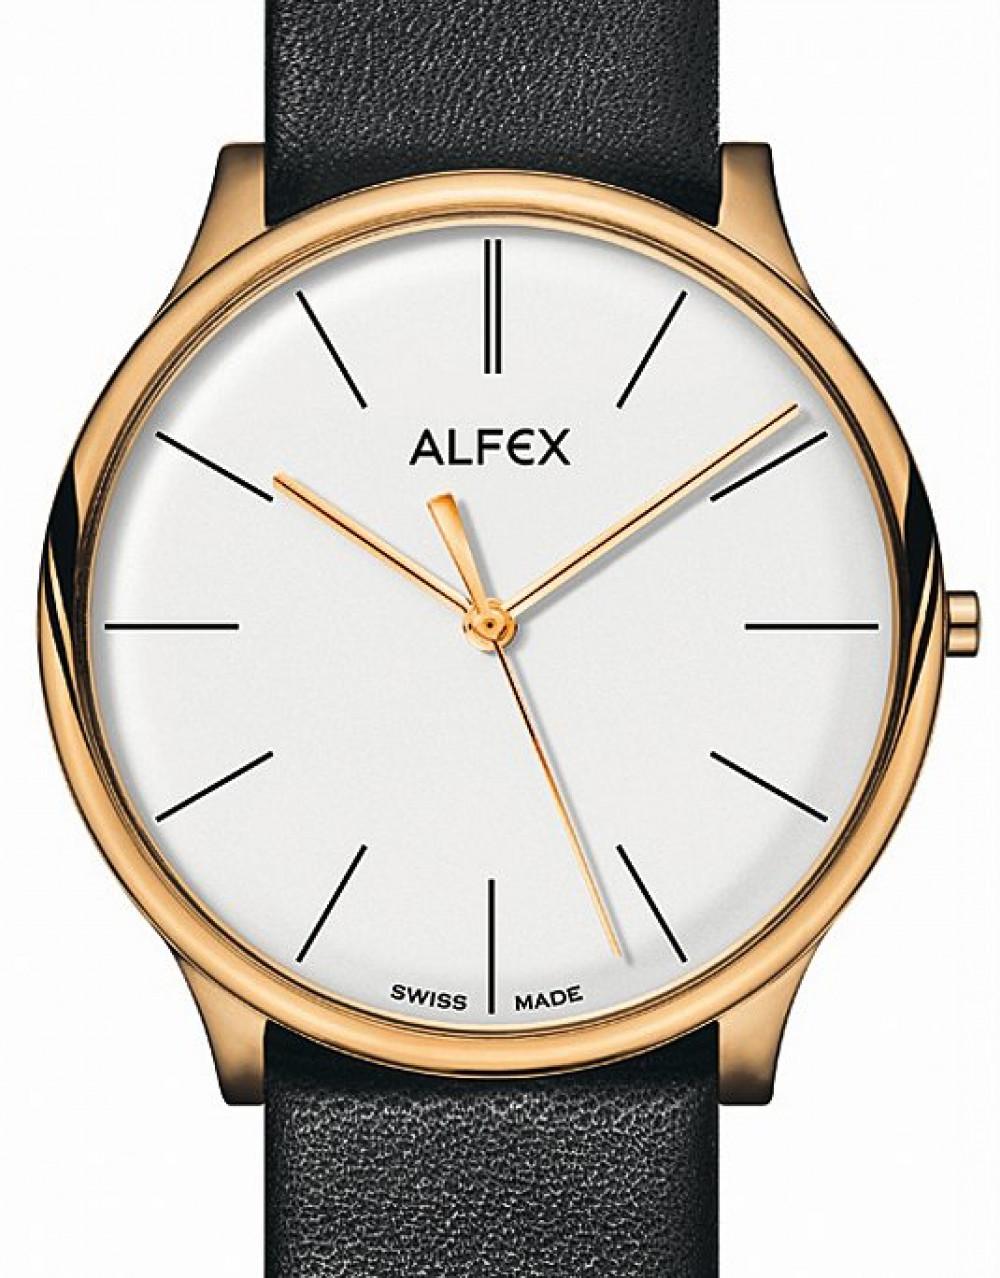 Zegarek firmy Alfex, model Flat Line